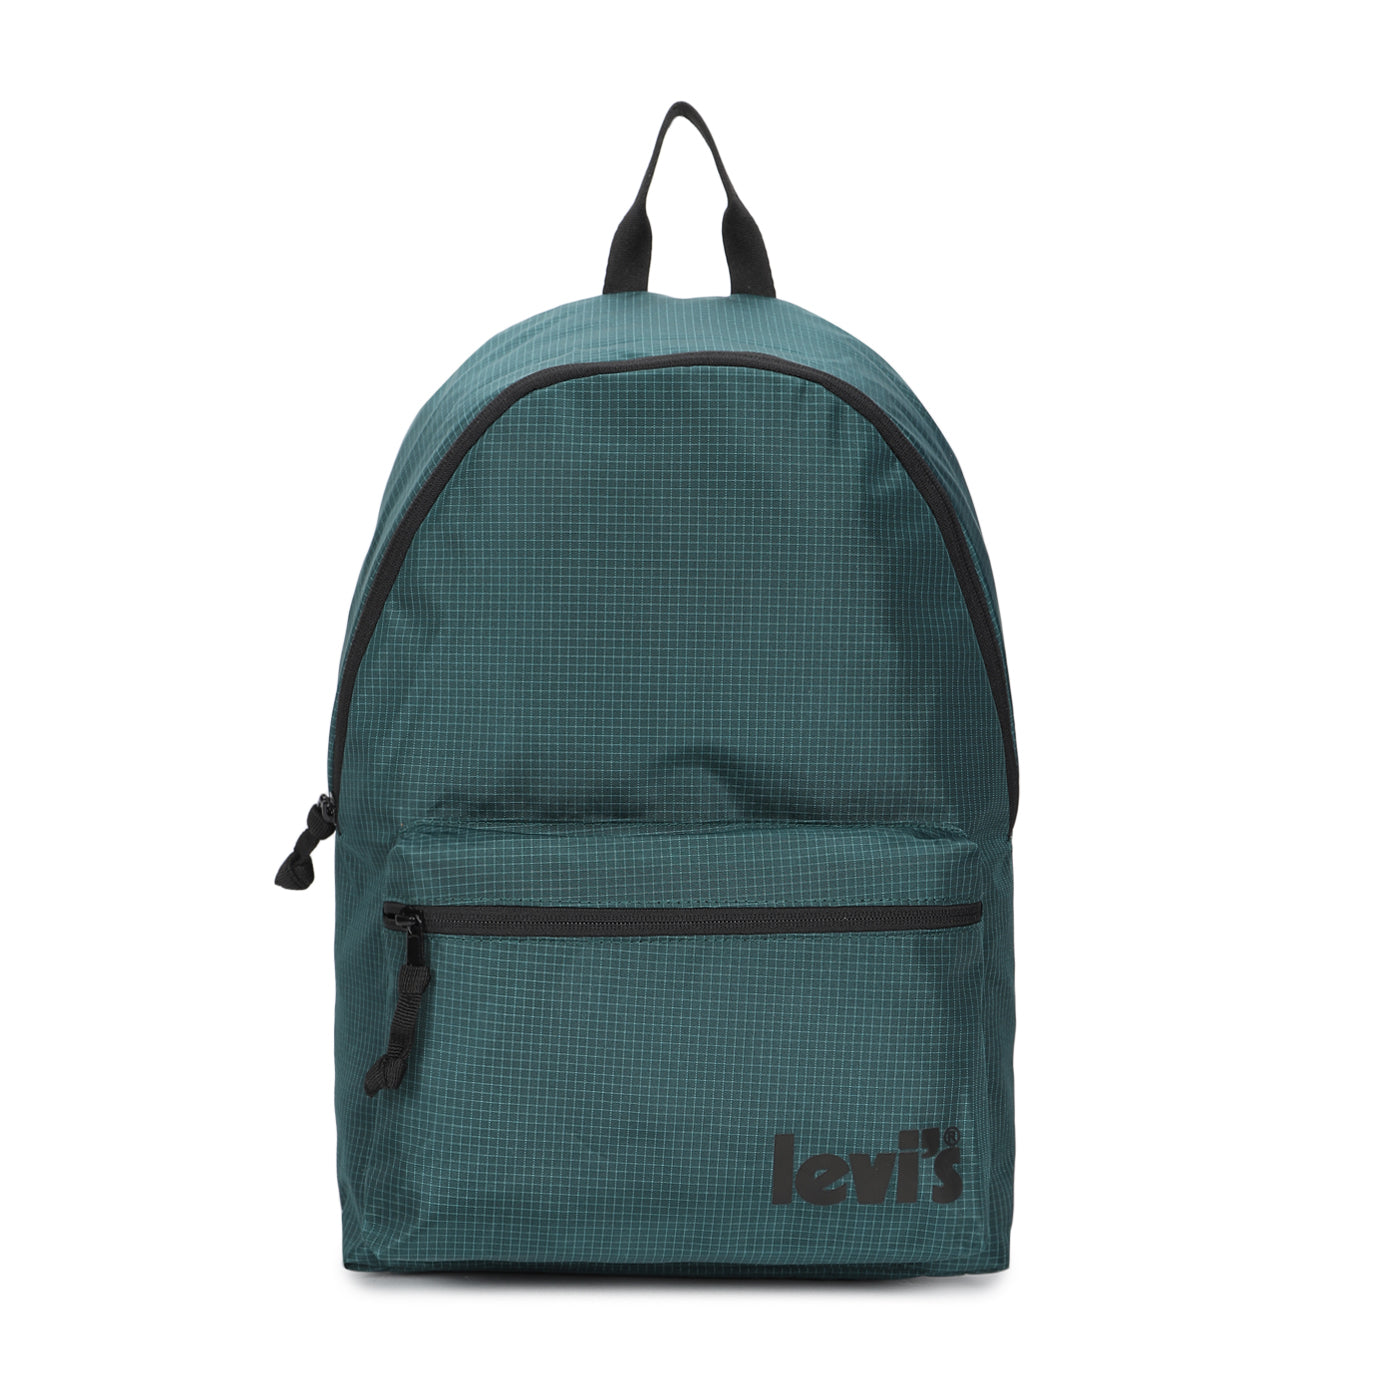 Men's Teal Green Solid Backpack